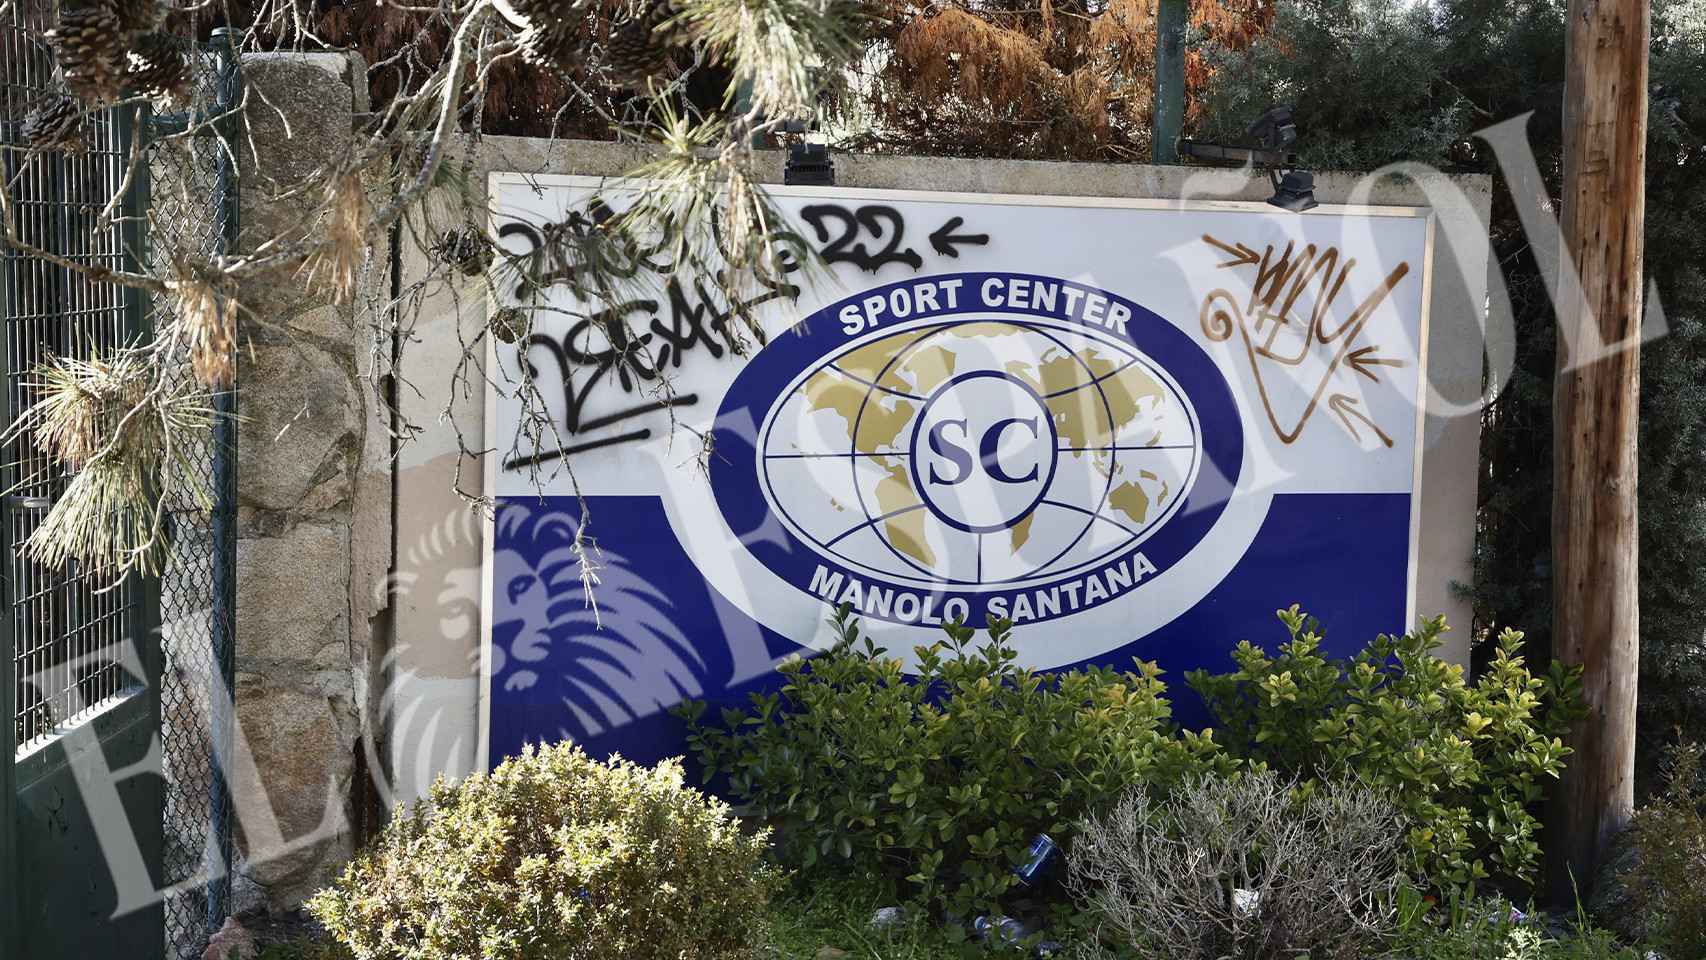 El cartel del Sport Center Manolo Santana que preside la entrada del centro, repleto de grafitis y vegetación descontrolada.